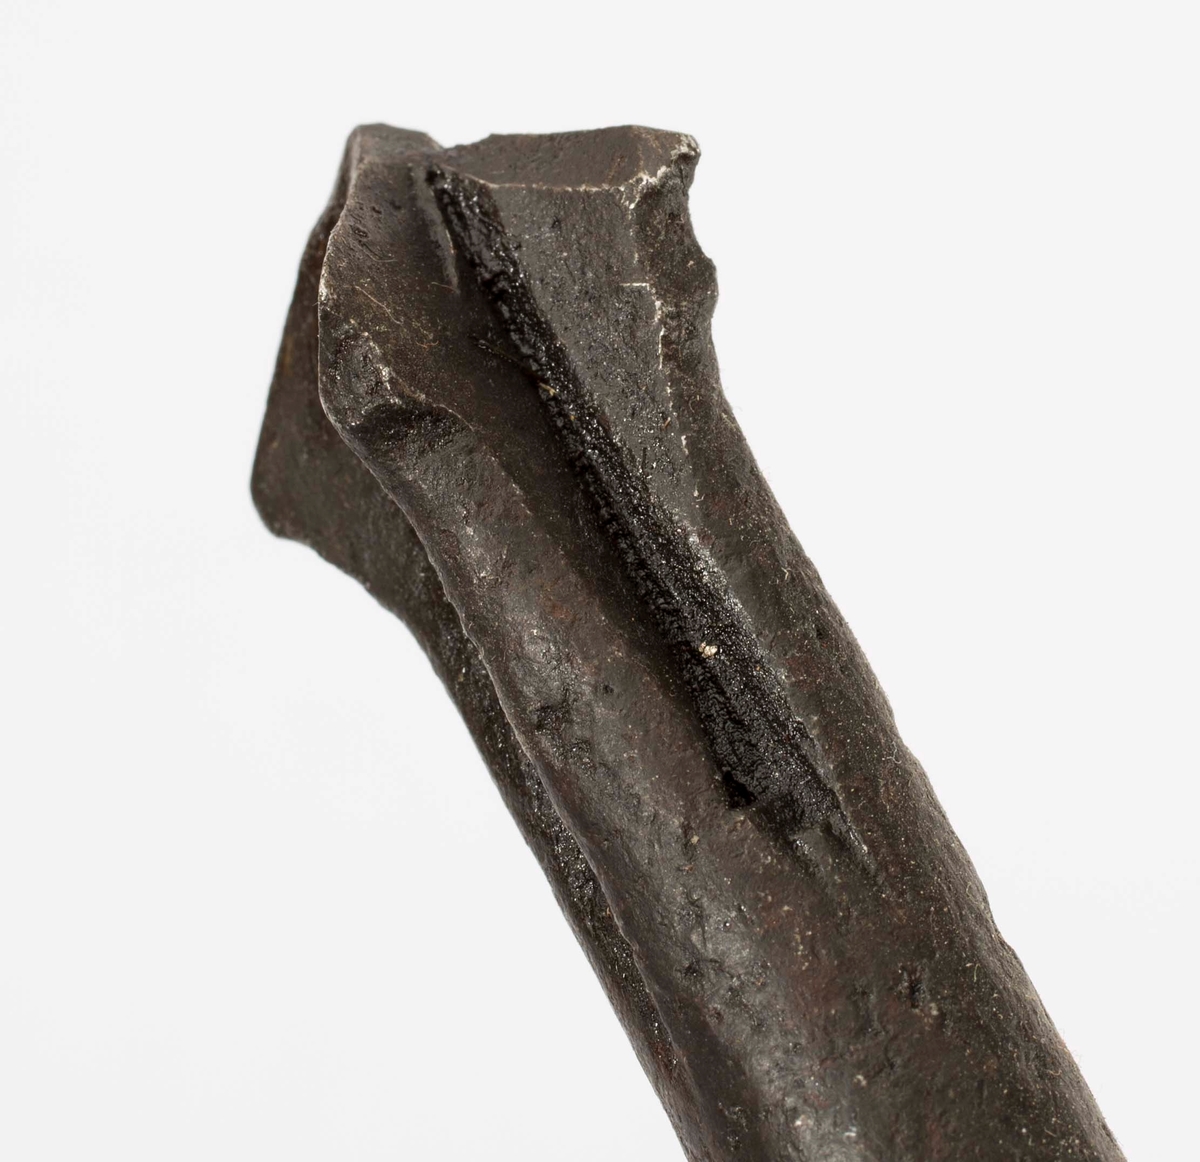 NTM: "Disse gamle jernbor er smidd ved Sølvverket og var
alminnelig brukt på slutten av det 19de århundre."
Jf. BVM 109 og 3973-3975.